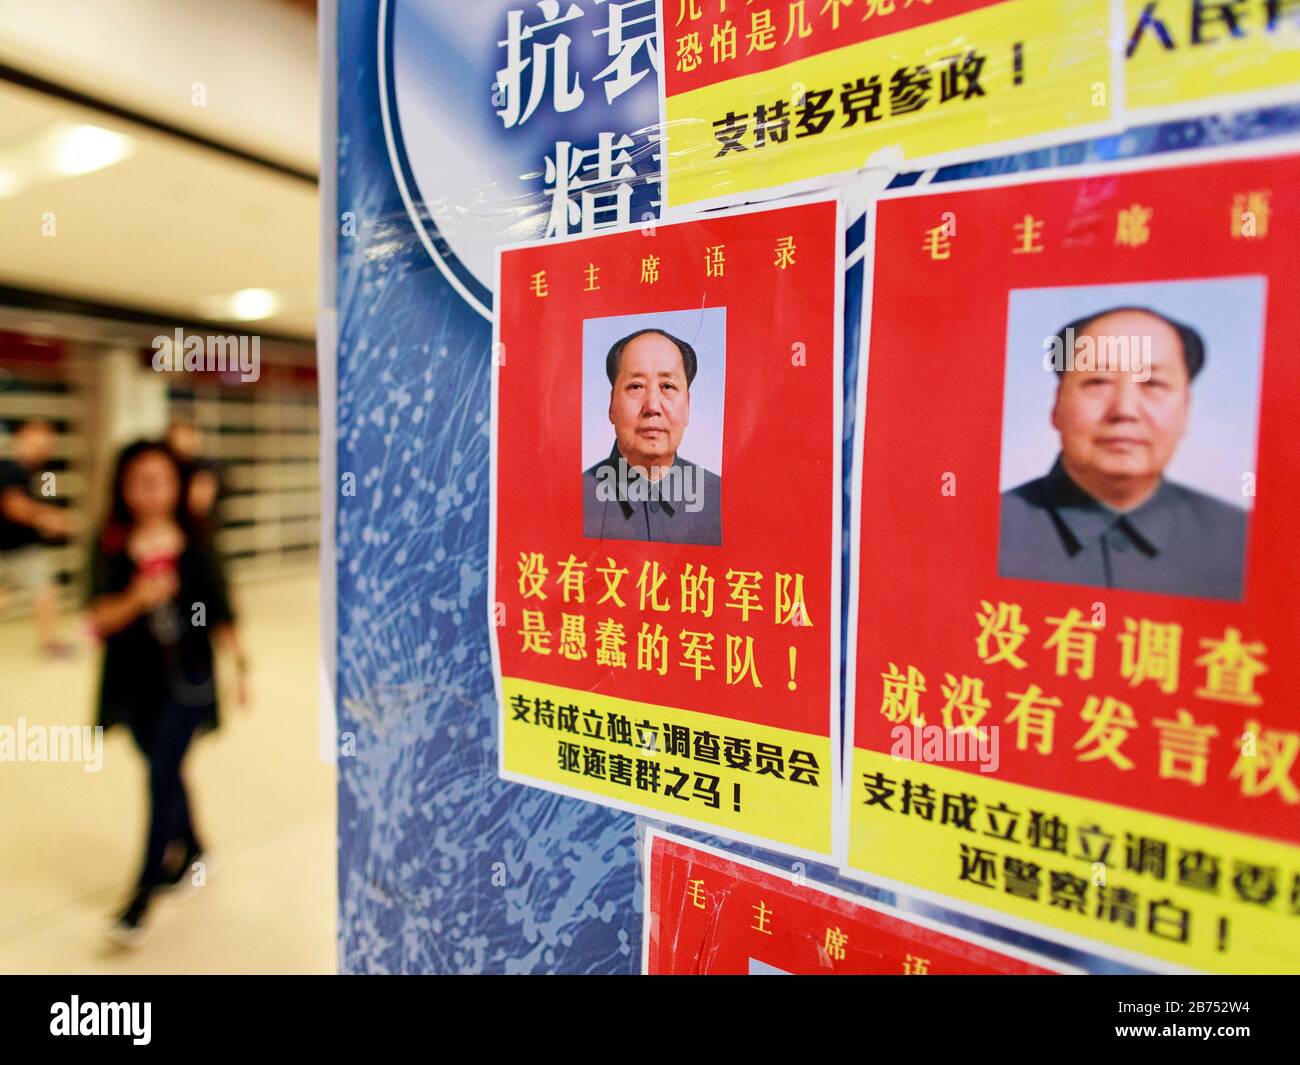 Posters read:'Une armée non instruite est une armée stupide-Mao Zedong'. La station de MTR de Shatin et la Plaza de la Nouvelle ville de Shatin ont été vandalisées après la manifestation. Les manifestants prétendent que la MTR a coopéré avec la police. Banque D'Images